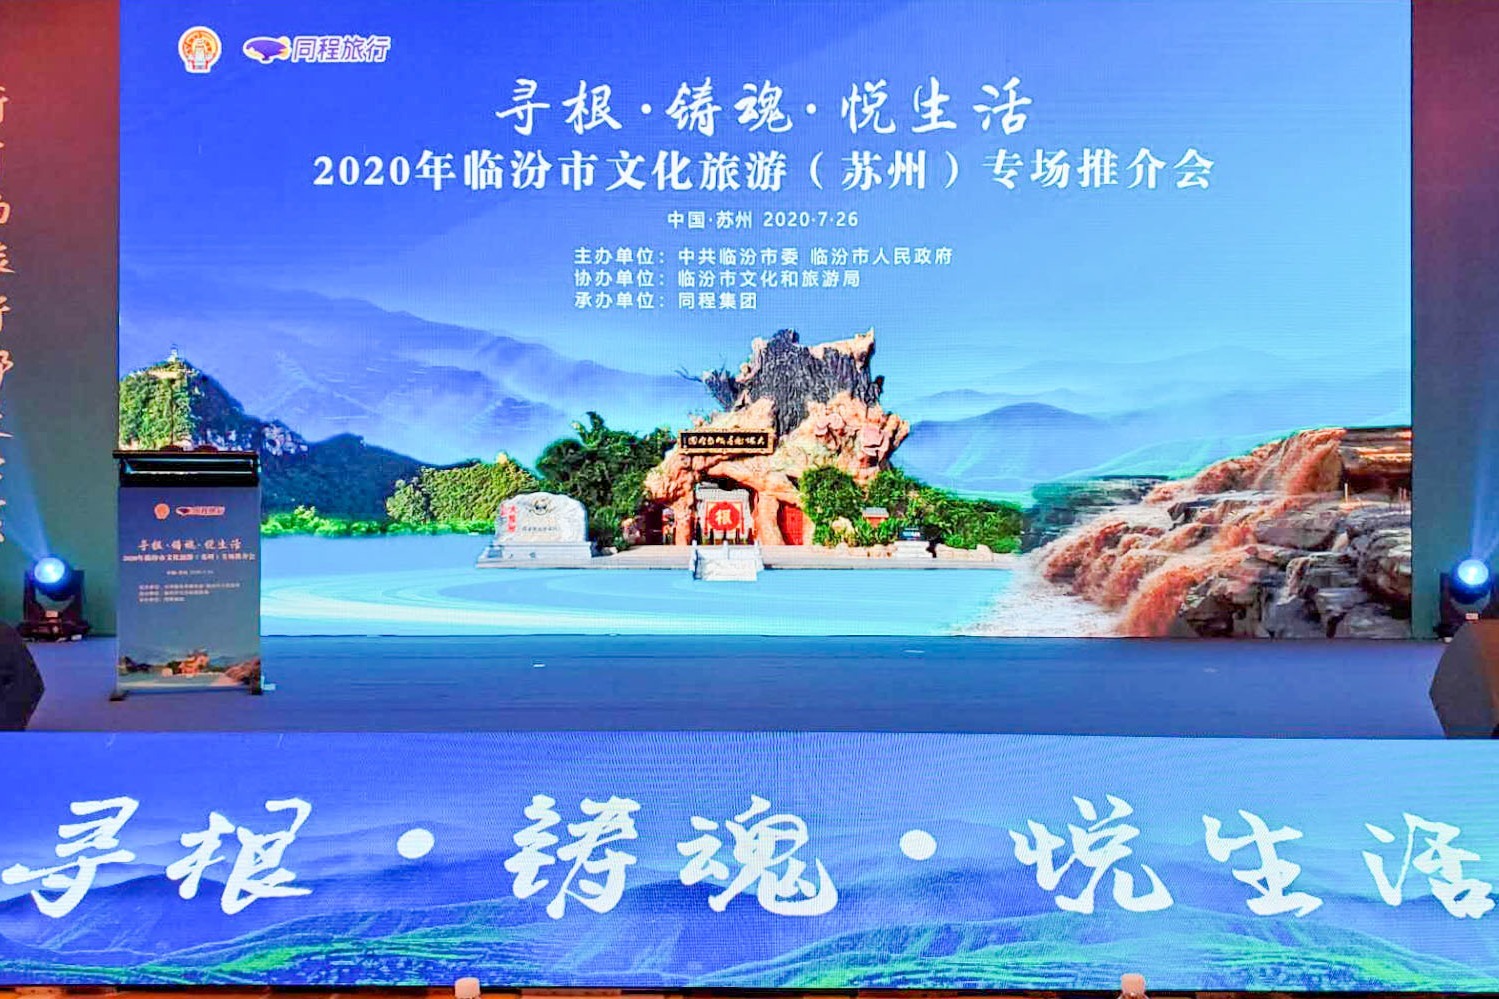 2020年临汾市文化旅游推介会在苏州举行